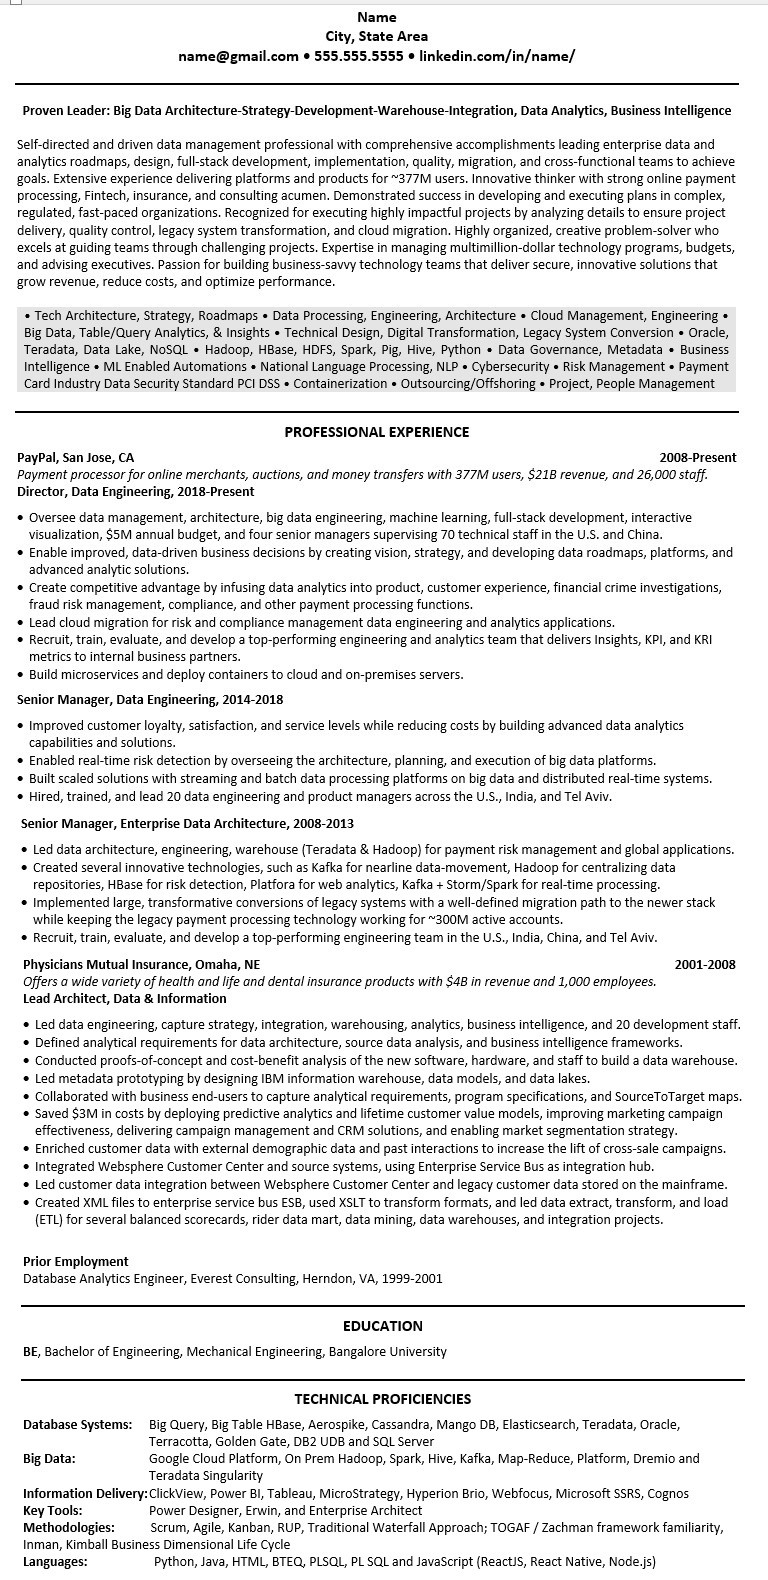 Sample Resume Of Hyperion Developer Linkedin Sample Linkedin Profile Resume: Business Intelligence, Data Mining